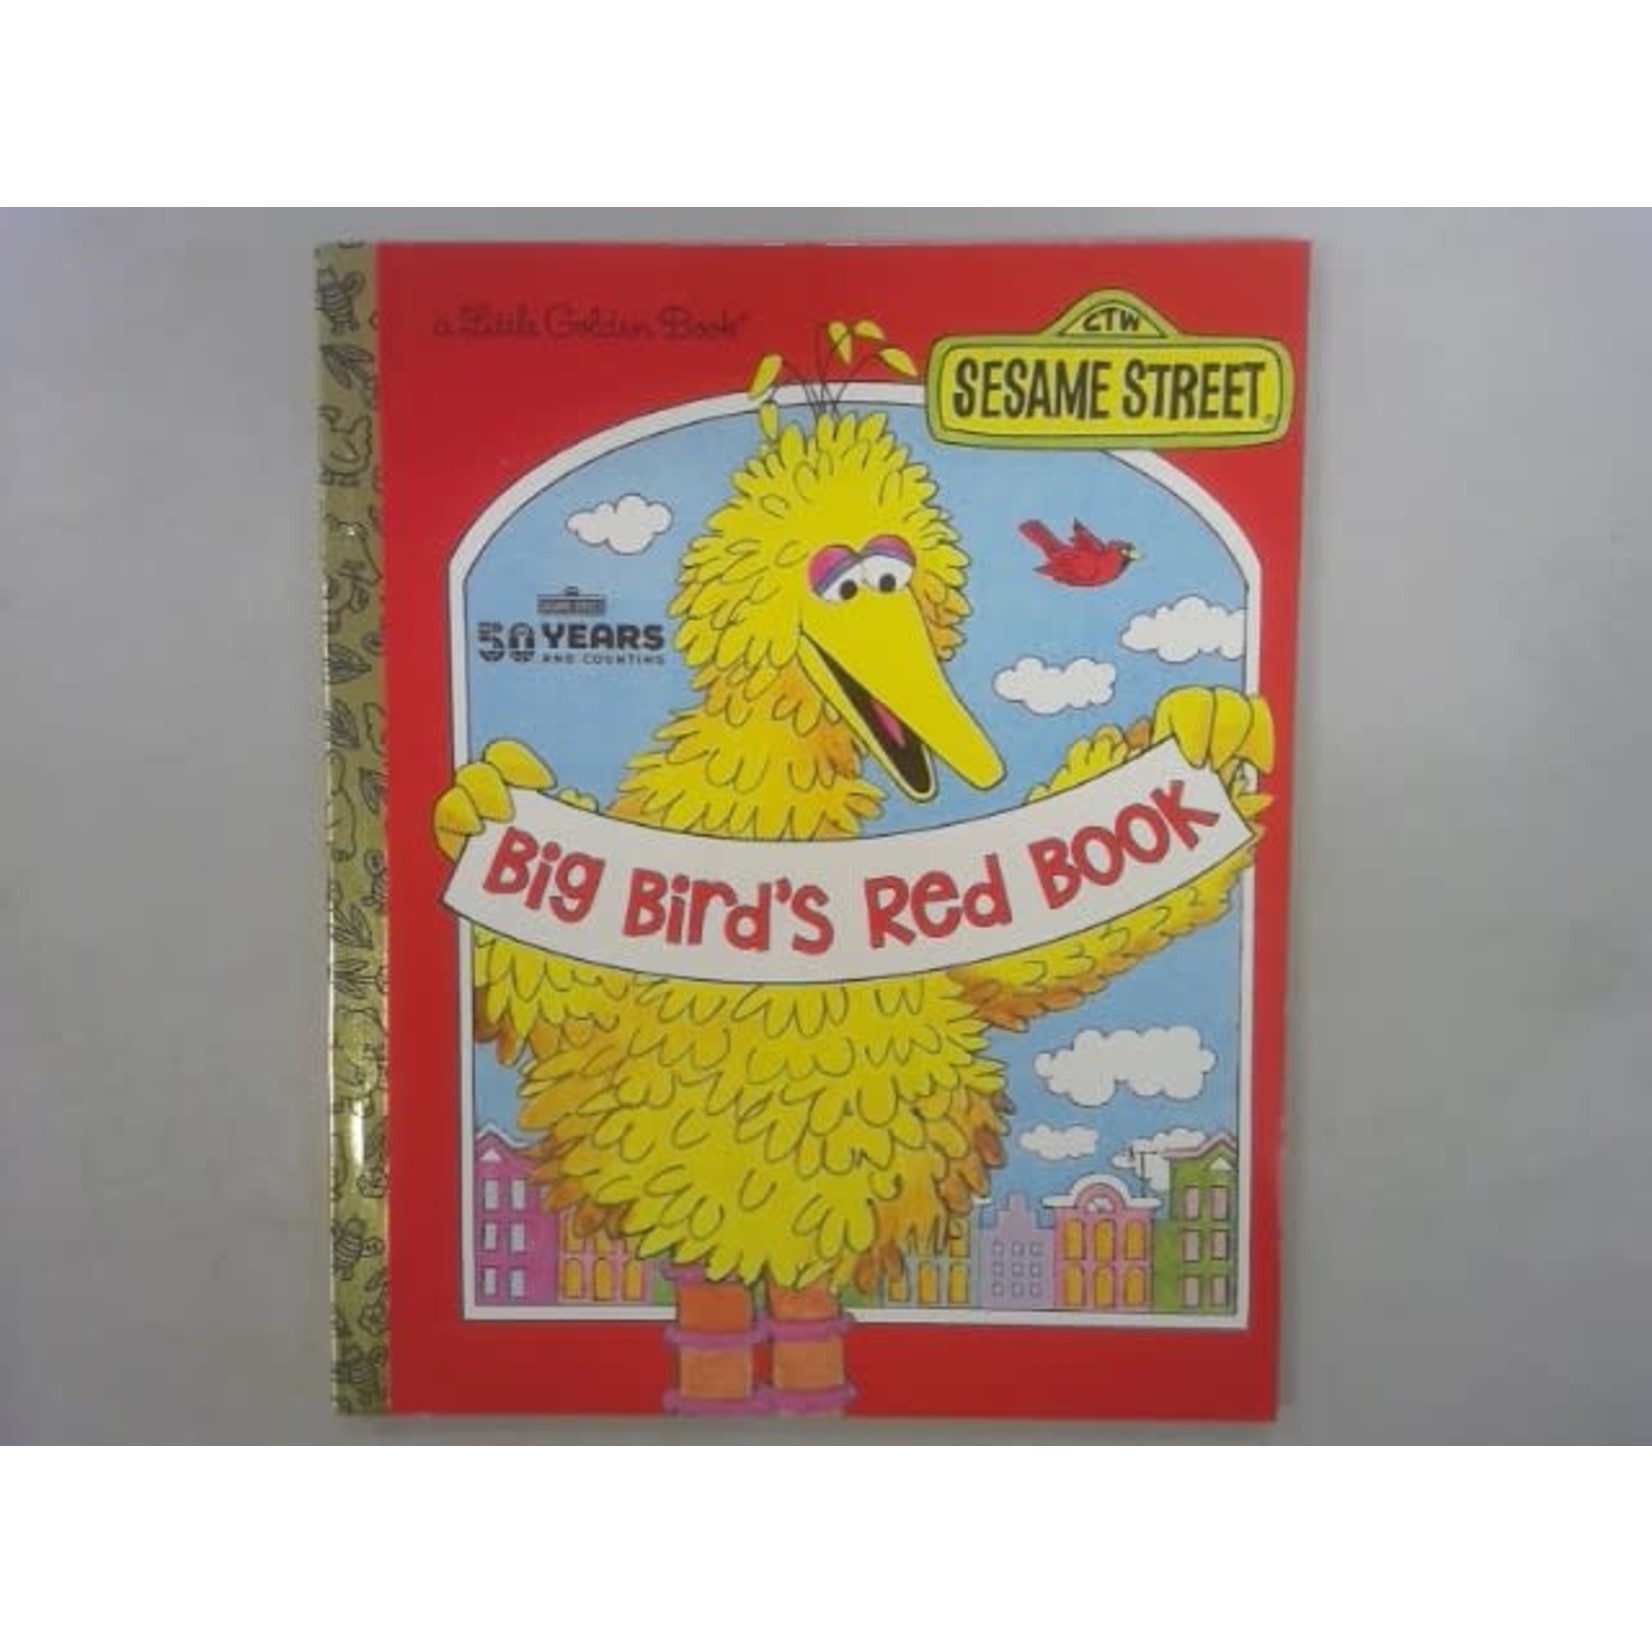 Little Golden Books Big Bird's Red Book (Sesame Street)